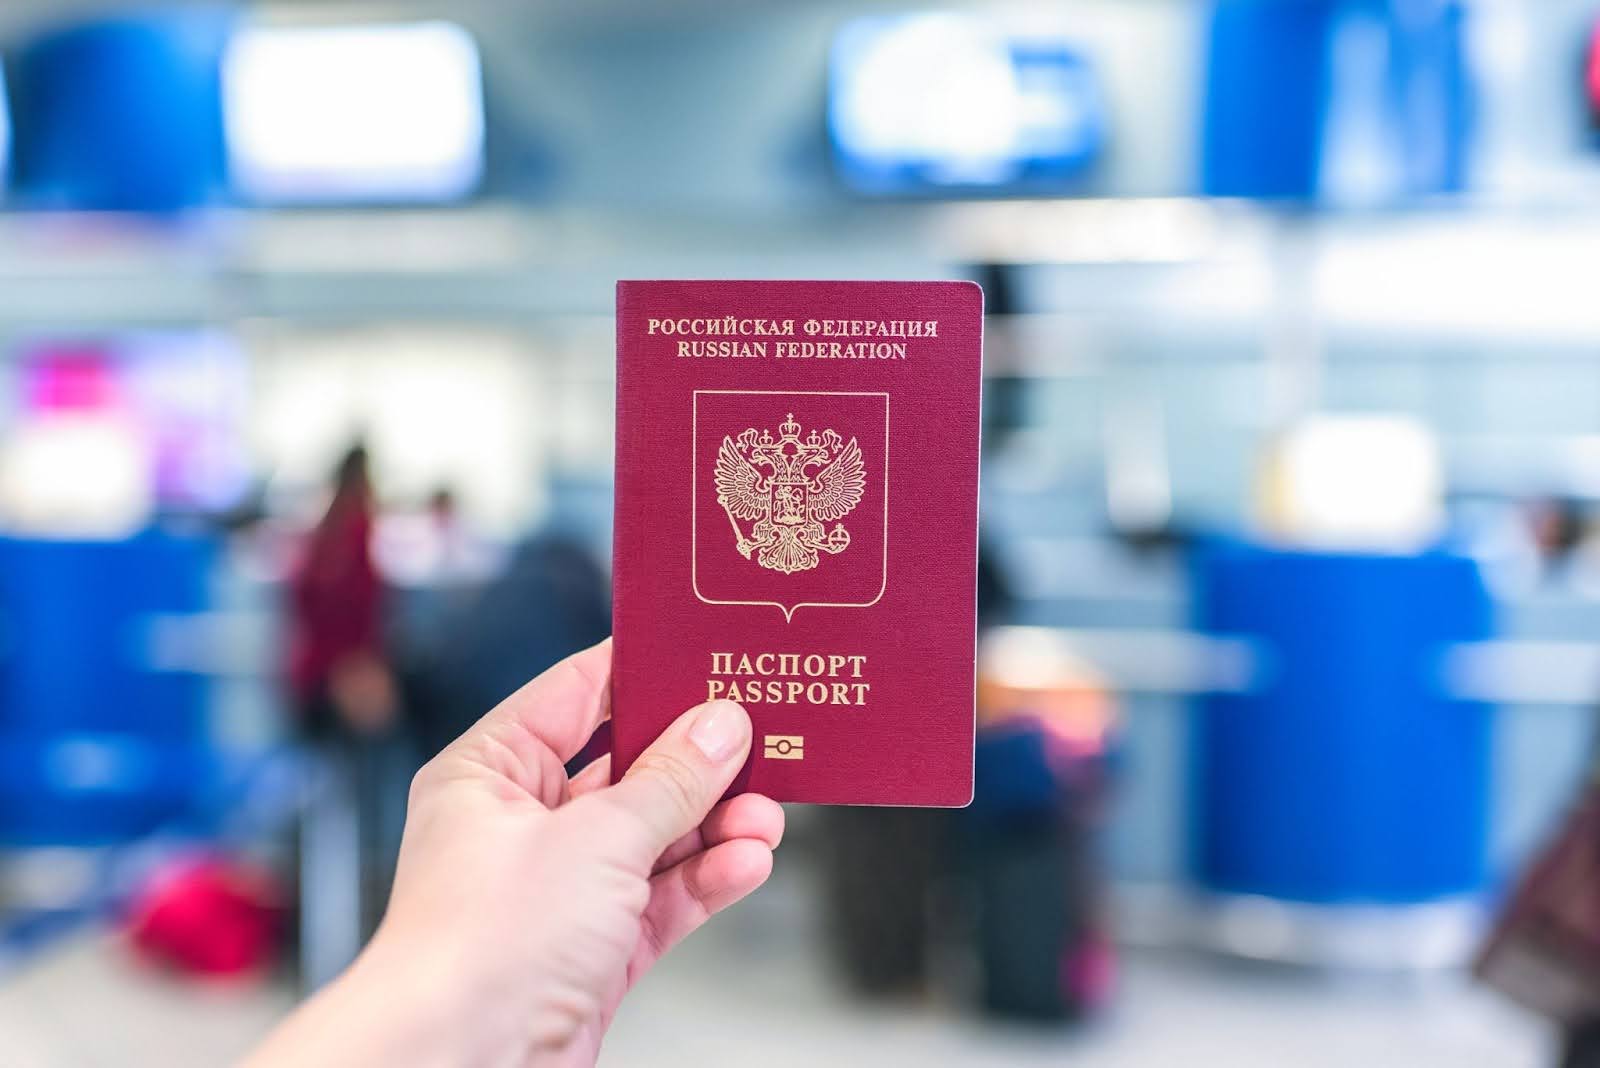 Lithuania seeks extending visa curbs targeting Russia, Belarus